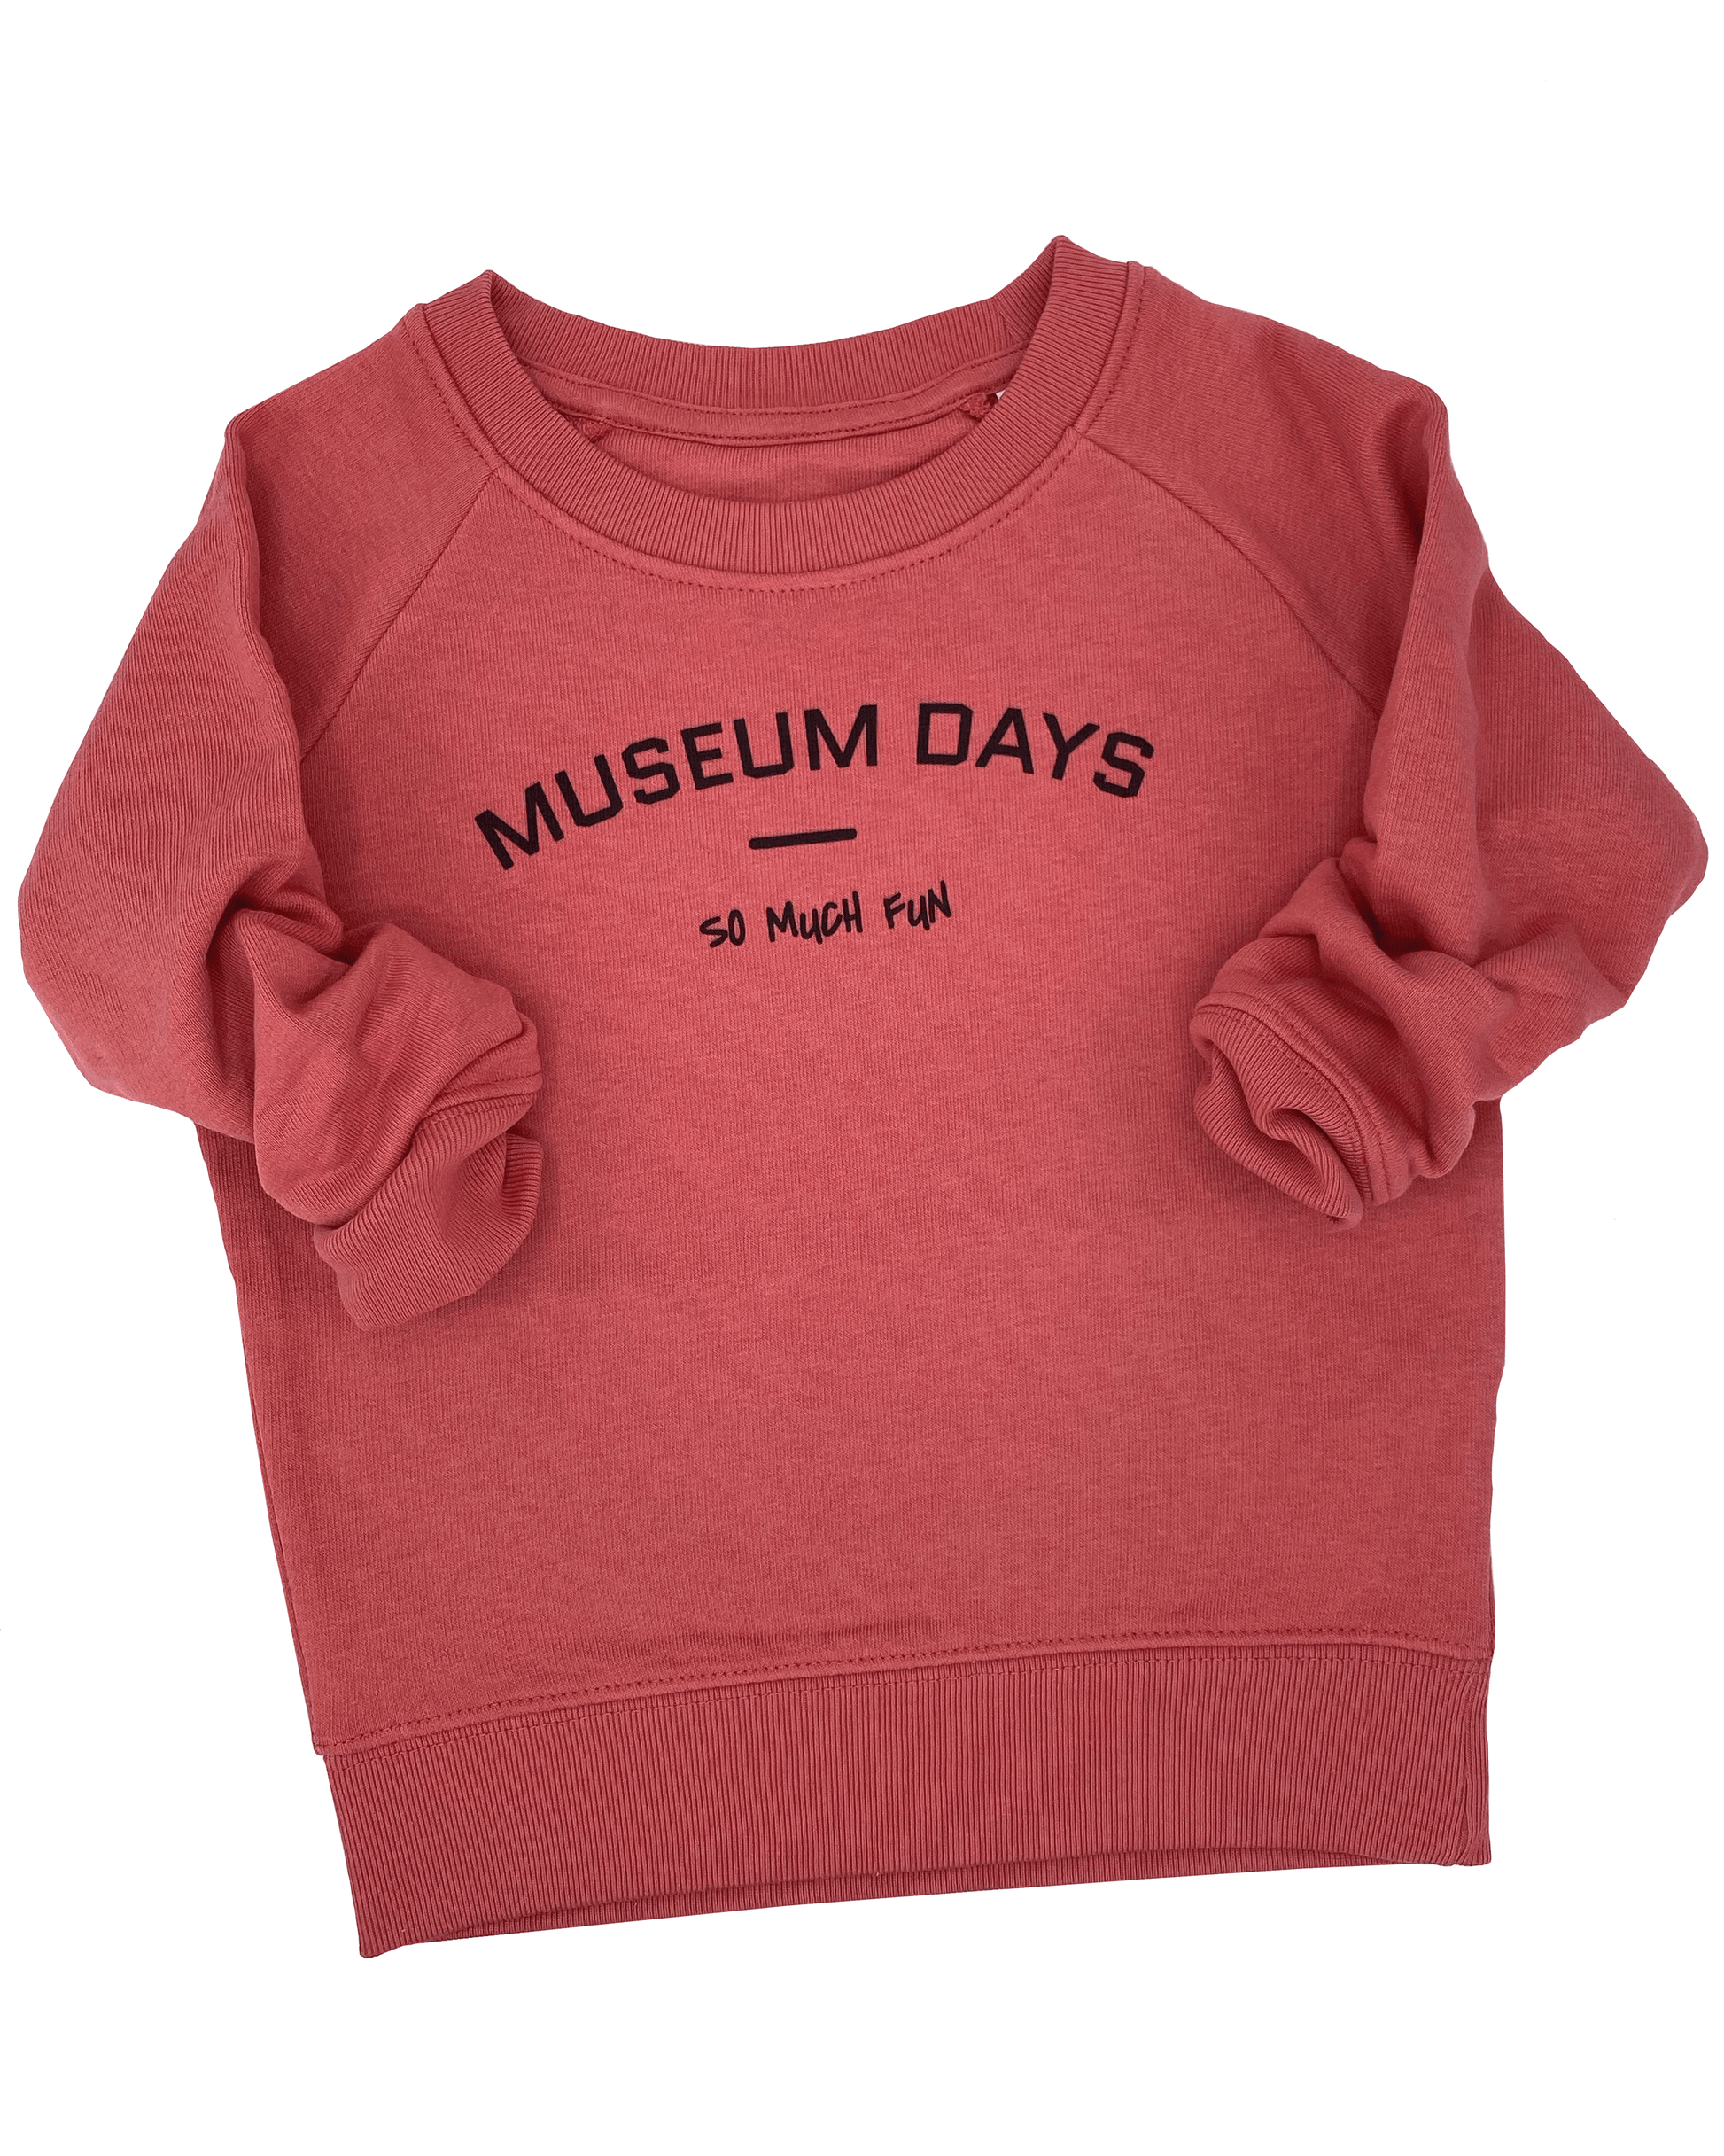 MUSEUM DAYS SO MUCH FUN - Kids Sweatshirt - Little Mate Adventures